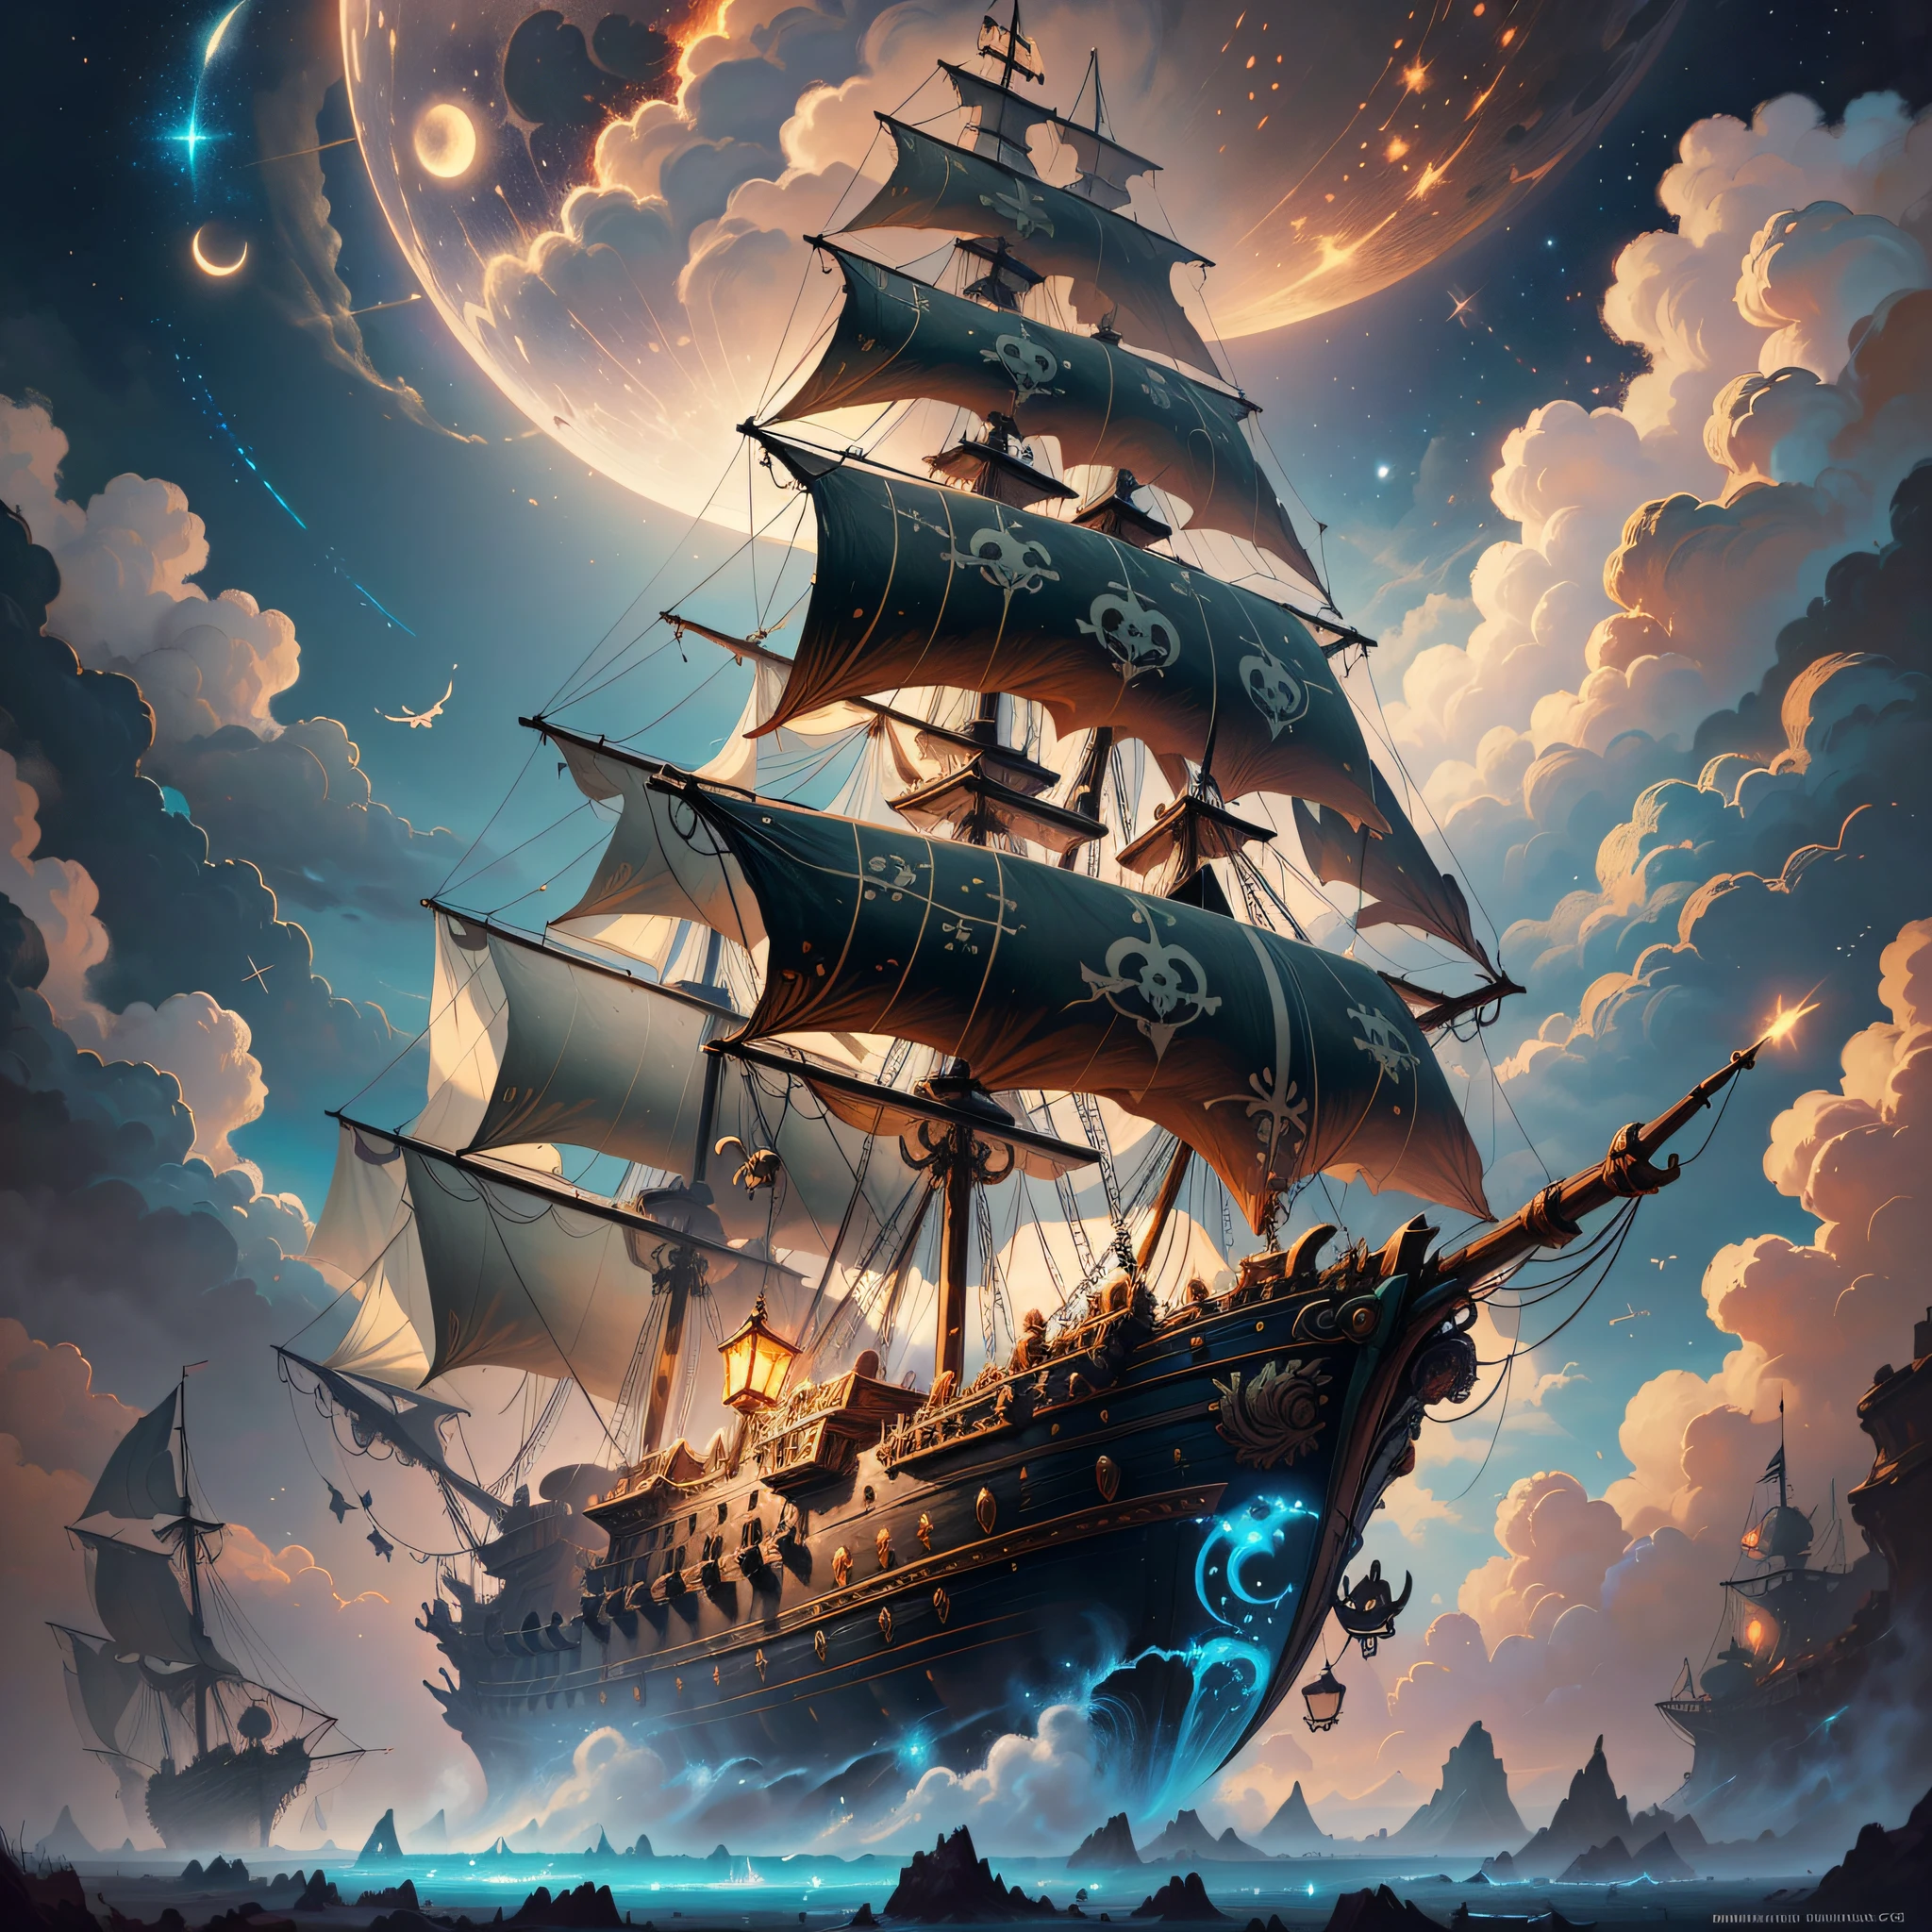 Картина летающего пиратского корабля в окружении маленьких фей., облака, Луна, звезды на заднем плане, Фантазия, Высокодетализированное цифровое искусство в 4K, Высококачественная детальная графика в 8K, в стиле Сирила Роландо, detailed Фантазия digital art, epic Фантазия science fiction illustration, потрясающие обои, вдохновлен Гастоном Бюссьером --auto --s2